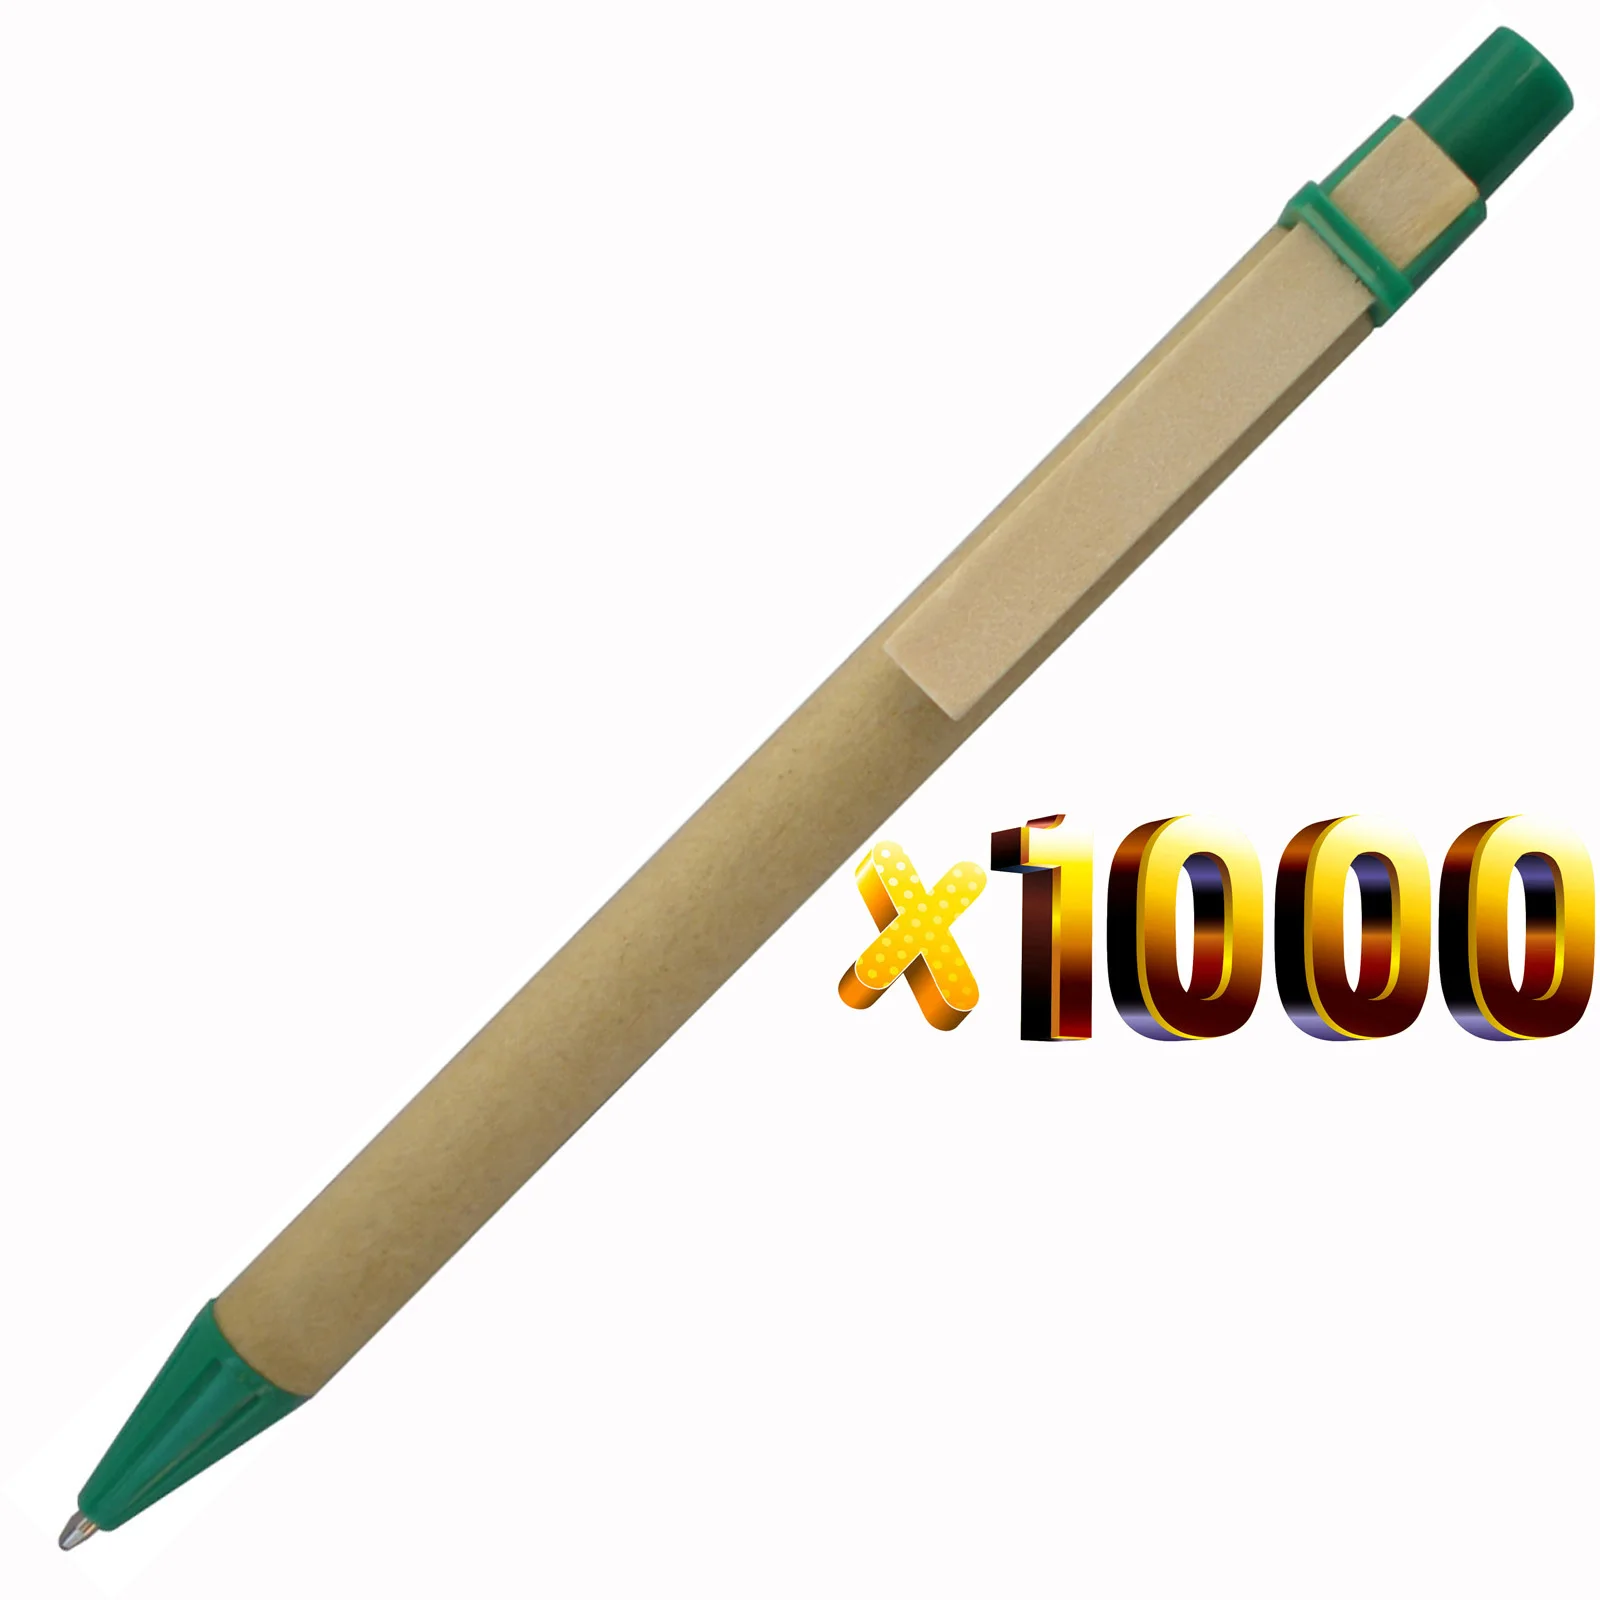 Лот 1000 шт эко бумажные ручки, деревянные зажимы зеленая концепция экологически чистые шариковые ручки оптом, индивидуальный рекламный логотип подарок - Цвет: green